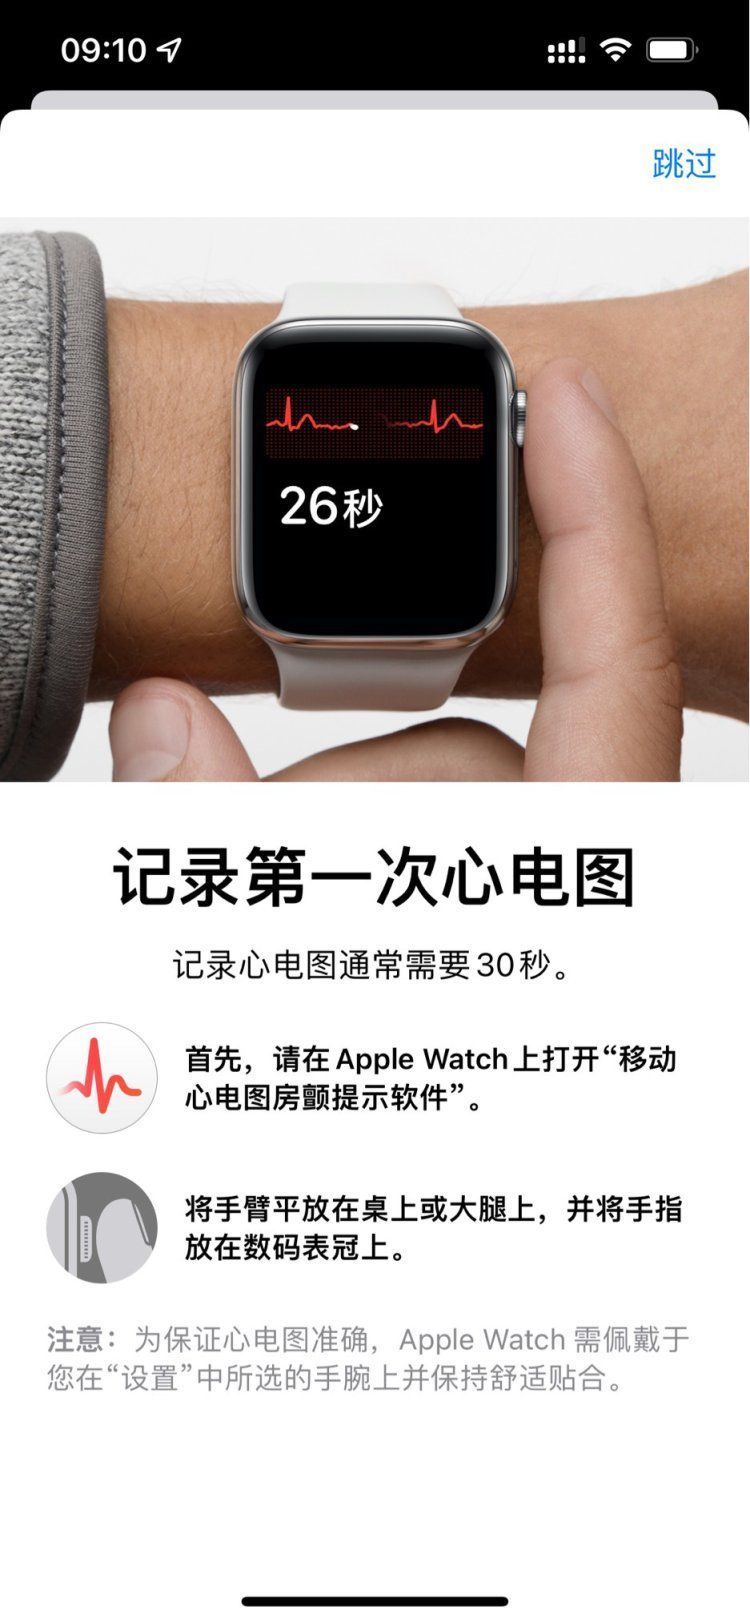 国行|国行 Apple Watch 已支持心电图检测功能